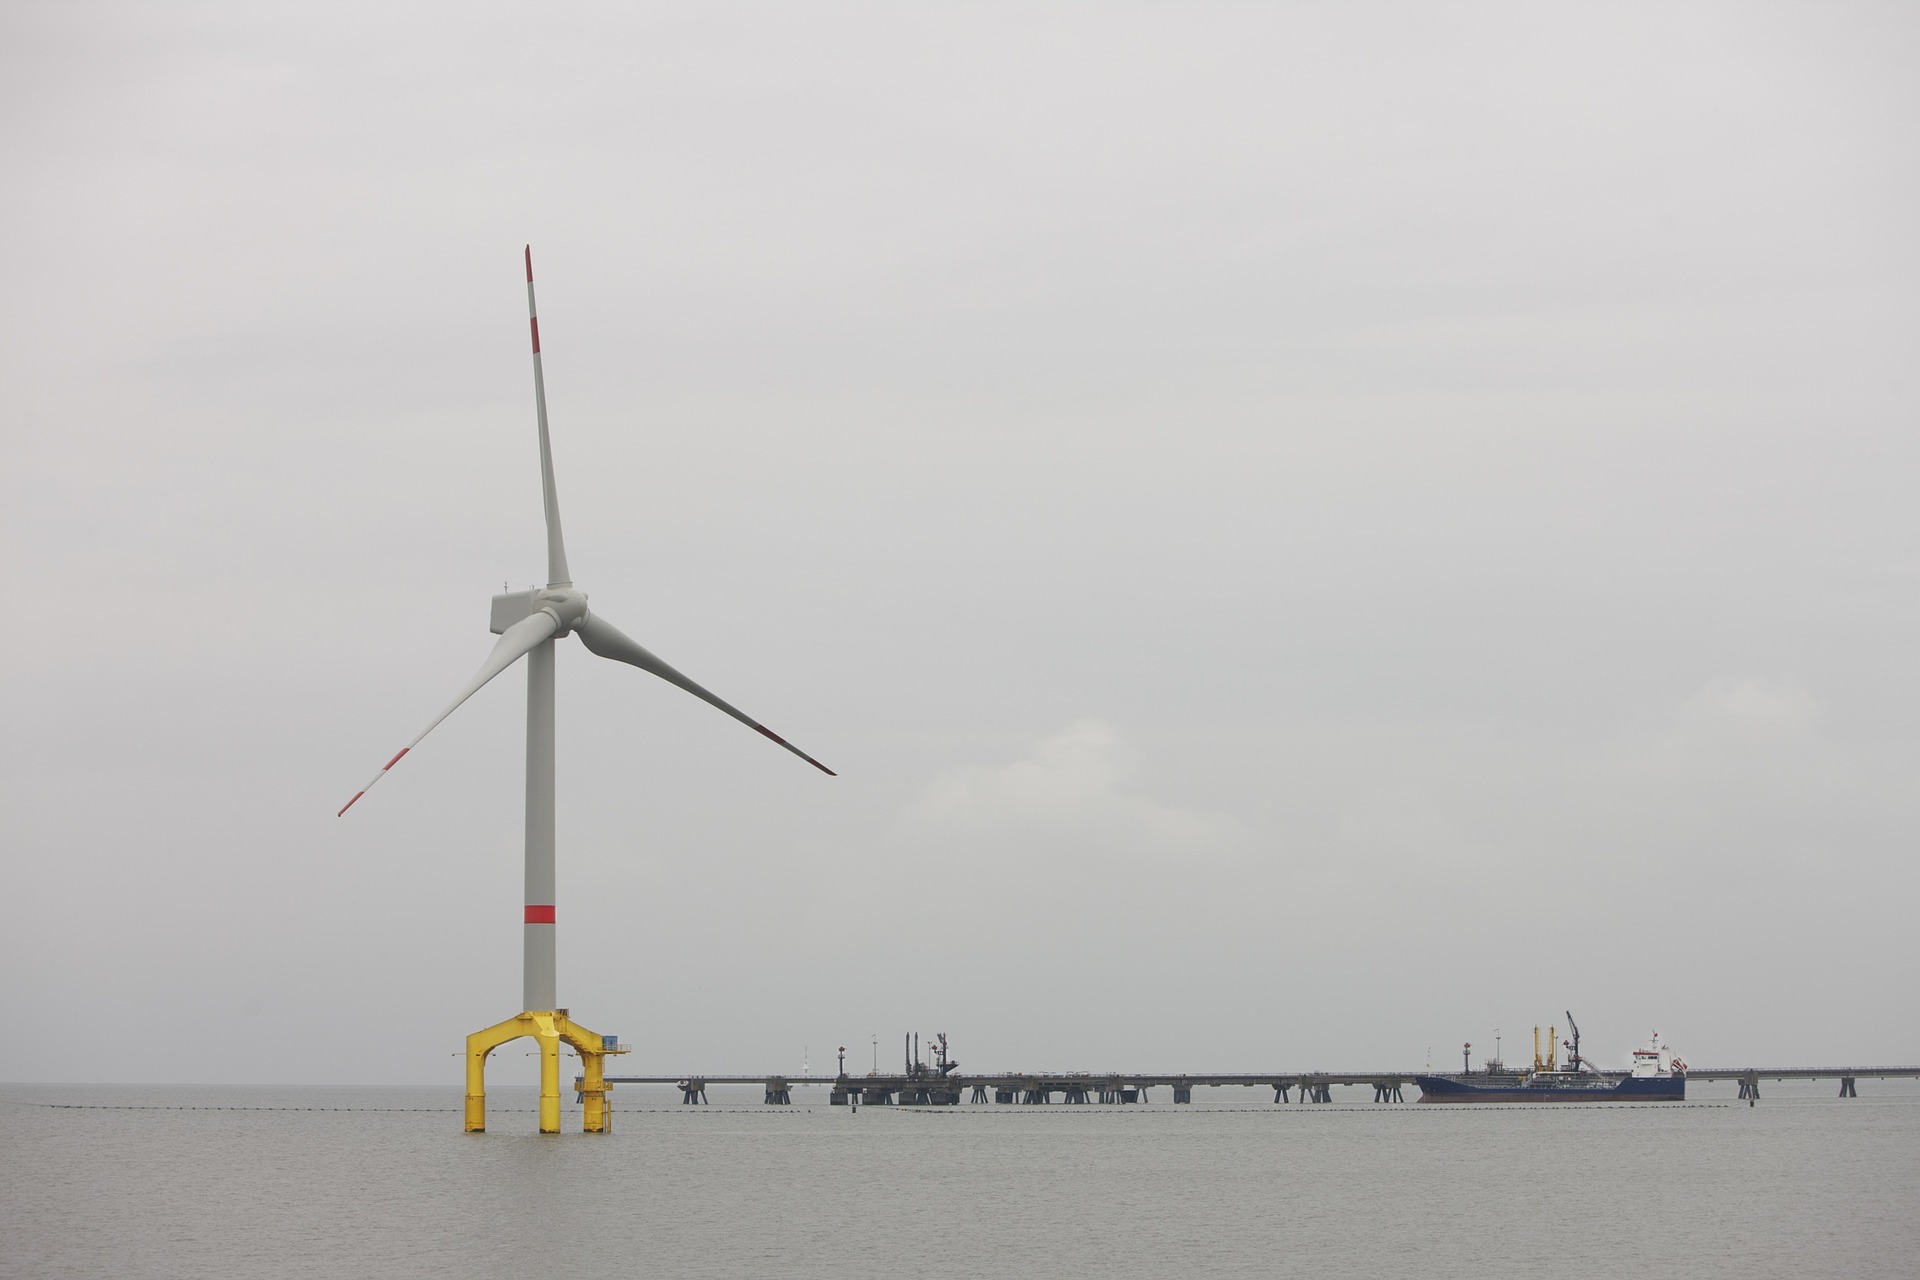 Morska energetyka wiatrowa to szansa na rozwój i zieloną rewolucję. Ale nadal brakuje przepisów